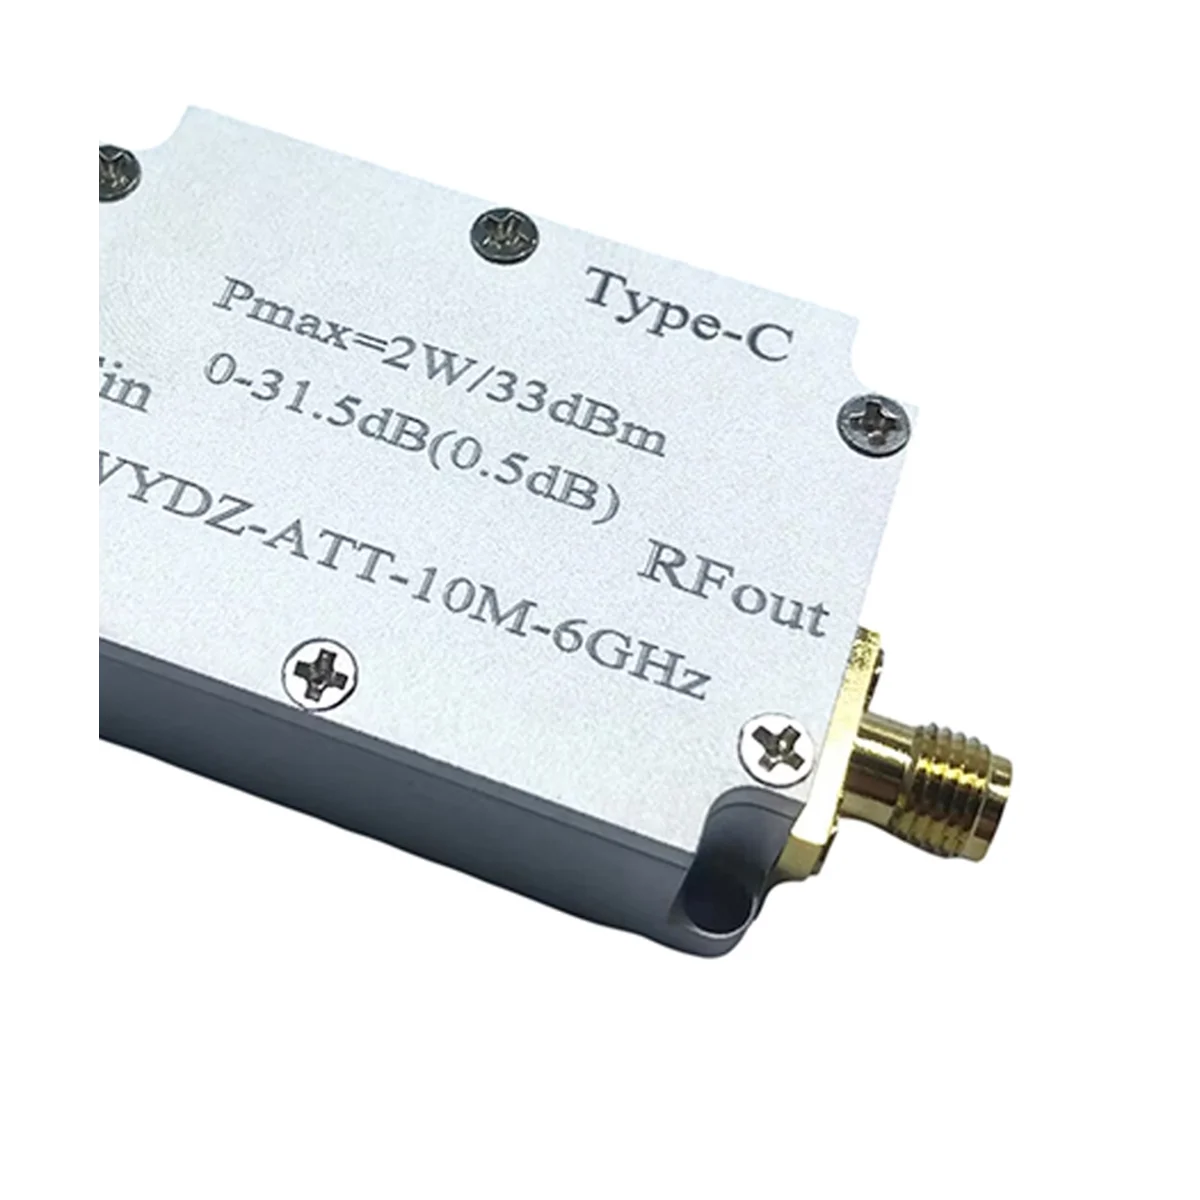 Усилитель с высокой плоскостностью 10 М-6 ГГц, 30 дБ, передающий радиочастотный сигнал или принимающий внешний сигнал, управляющий приемником